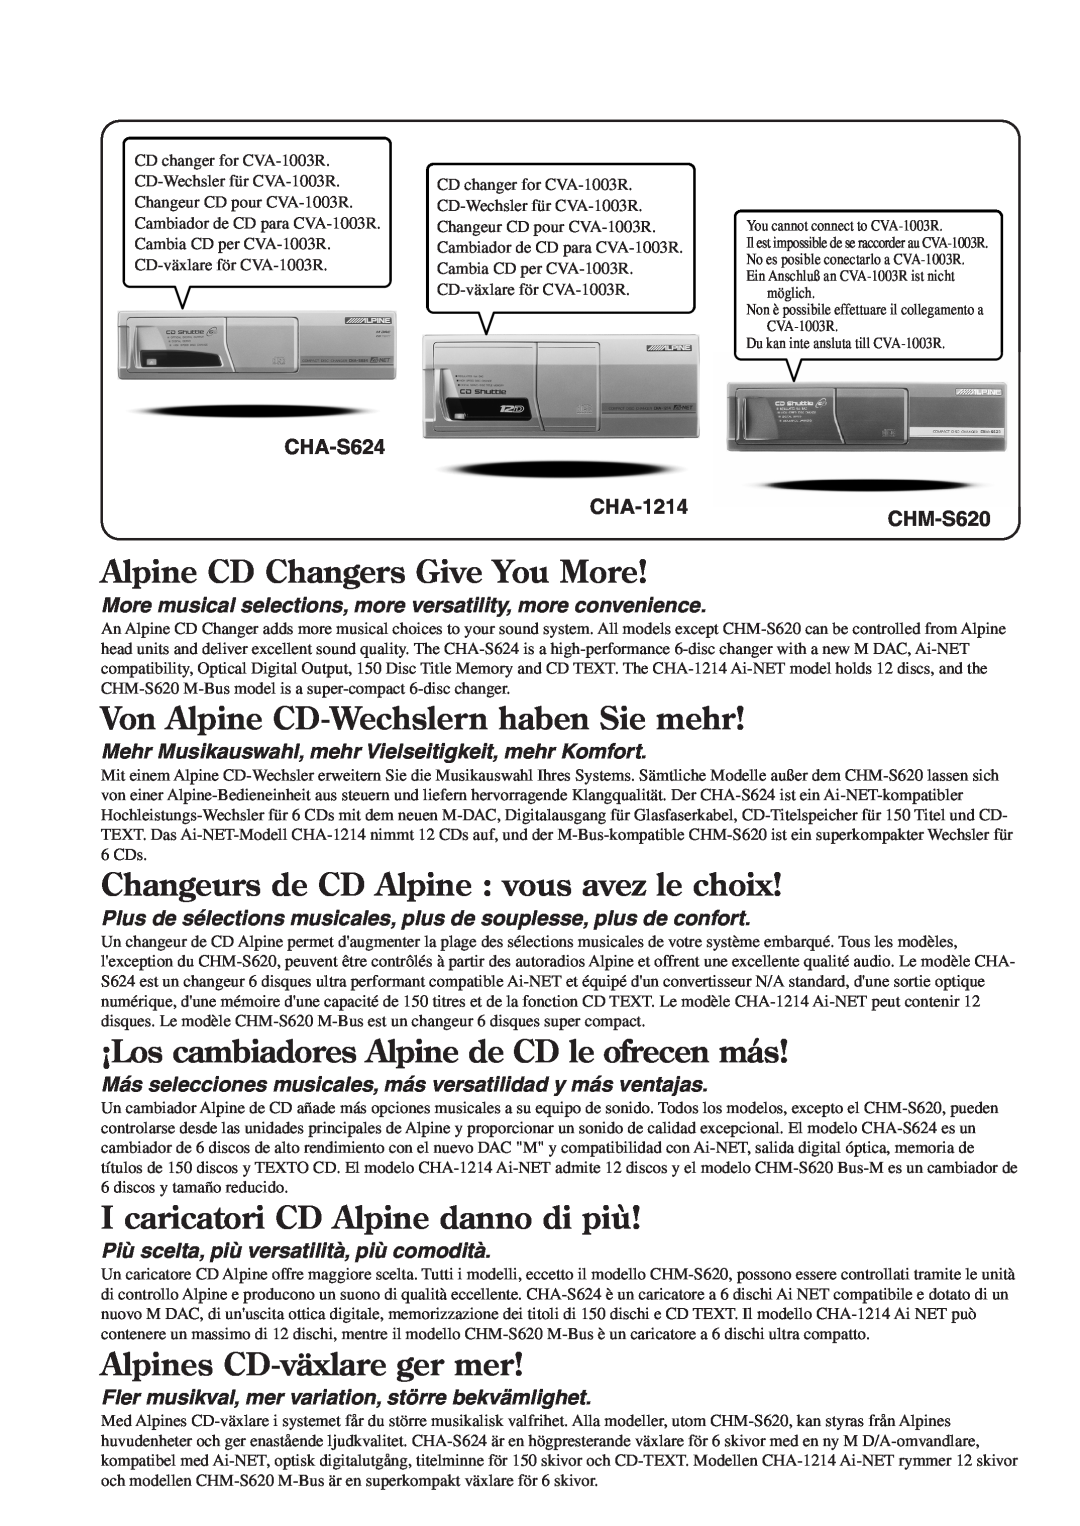 Alpine CVA-1003R Alpine CD Changers Give You More, Von Alpine CD-Wechslernhaben Sie mehr, Alpines CD-växlareger mer 